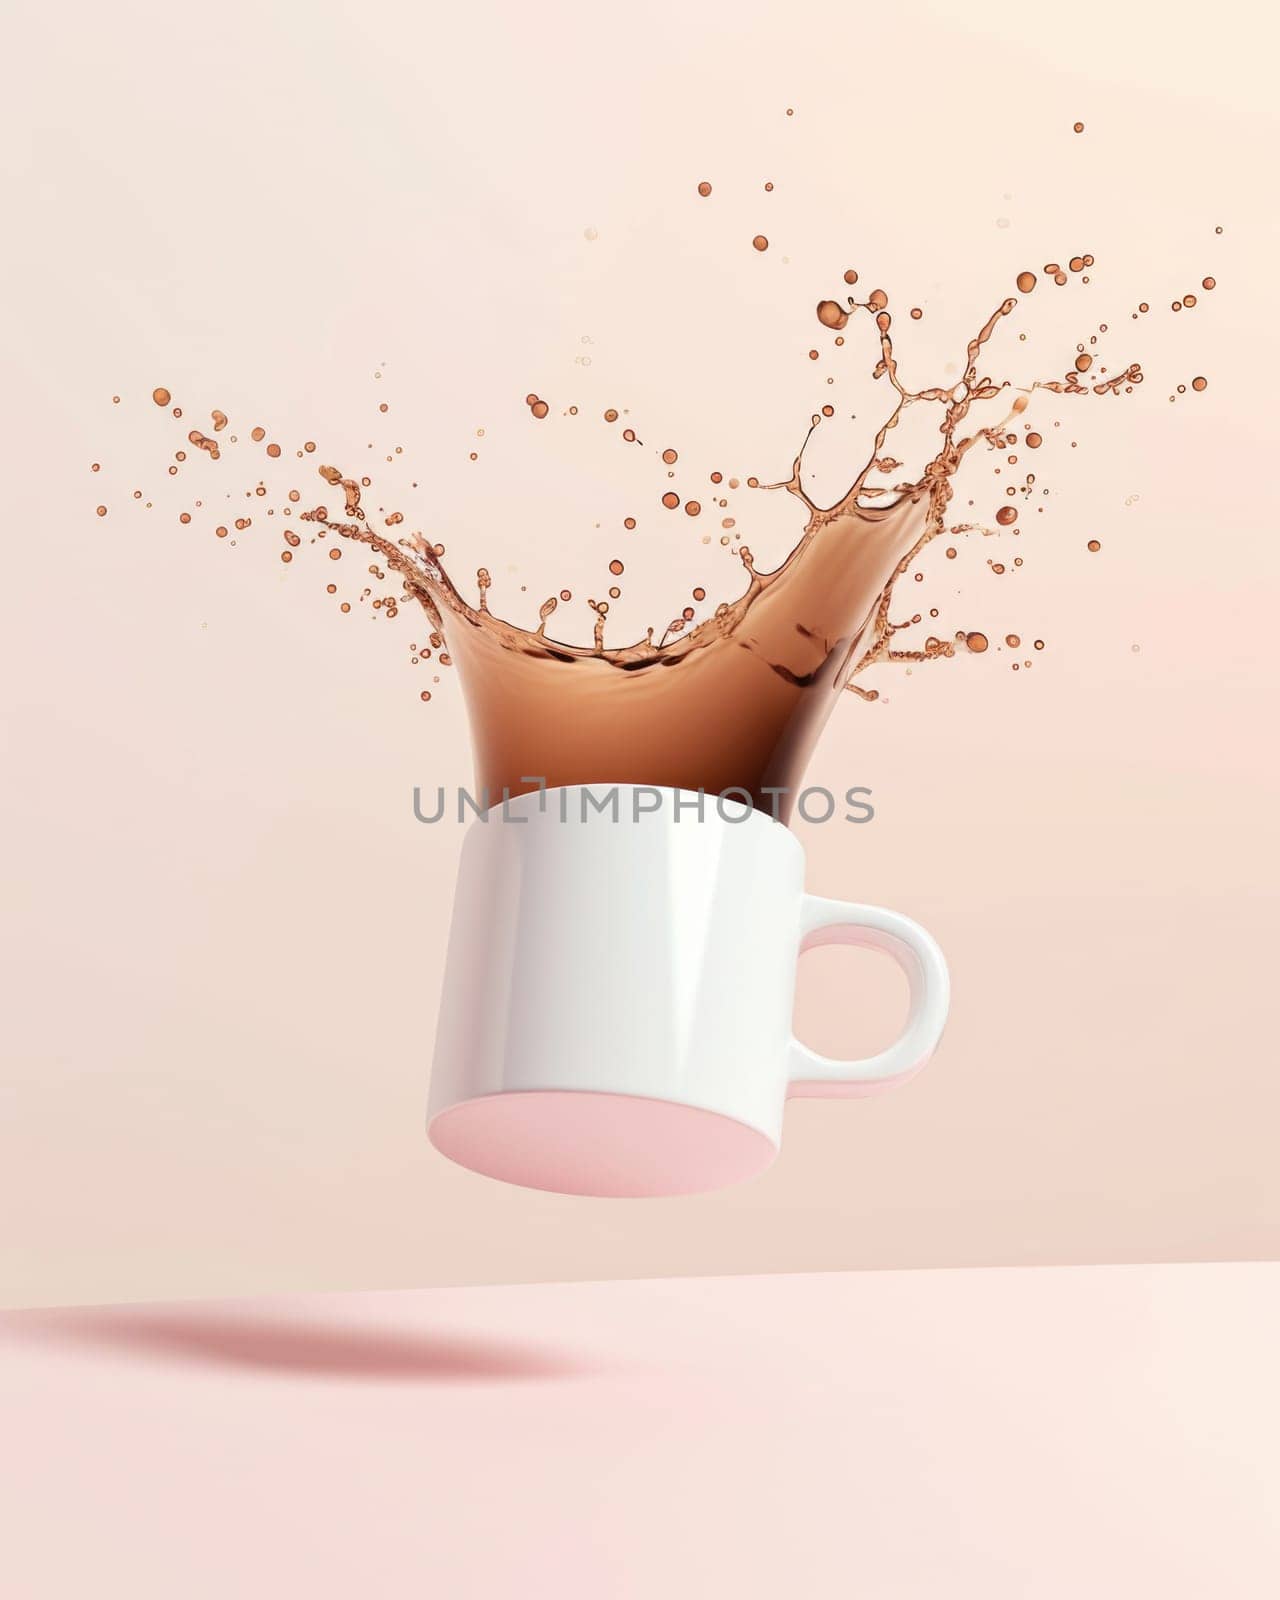 Flying mug with black coffee splashes on light background